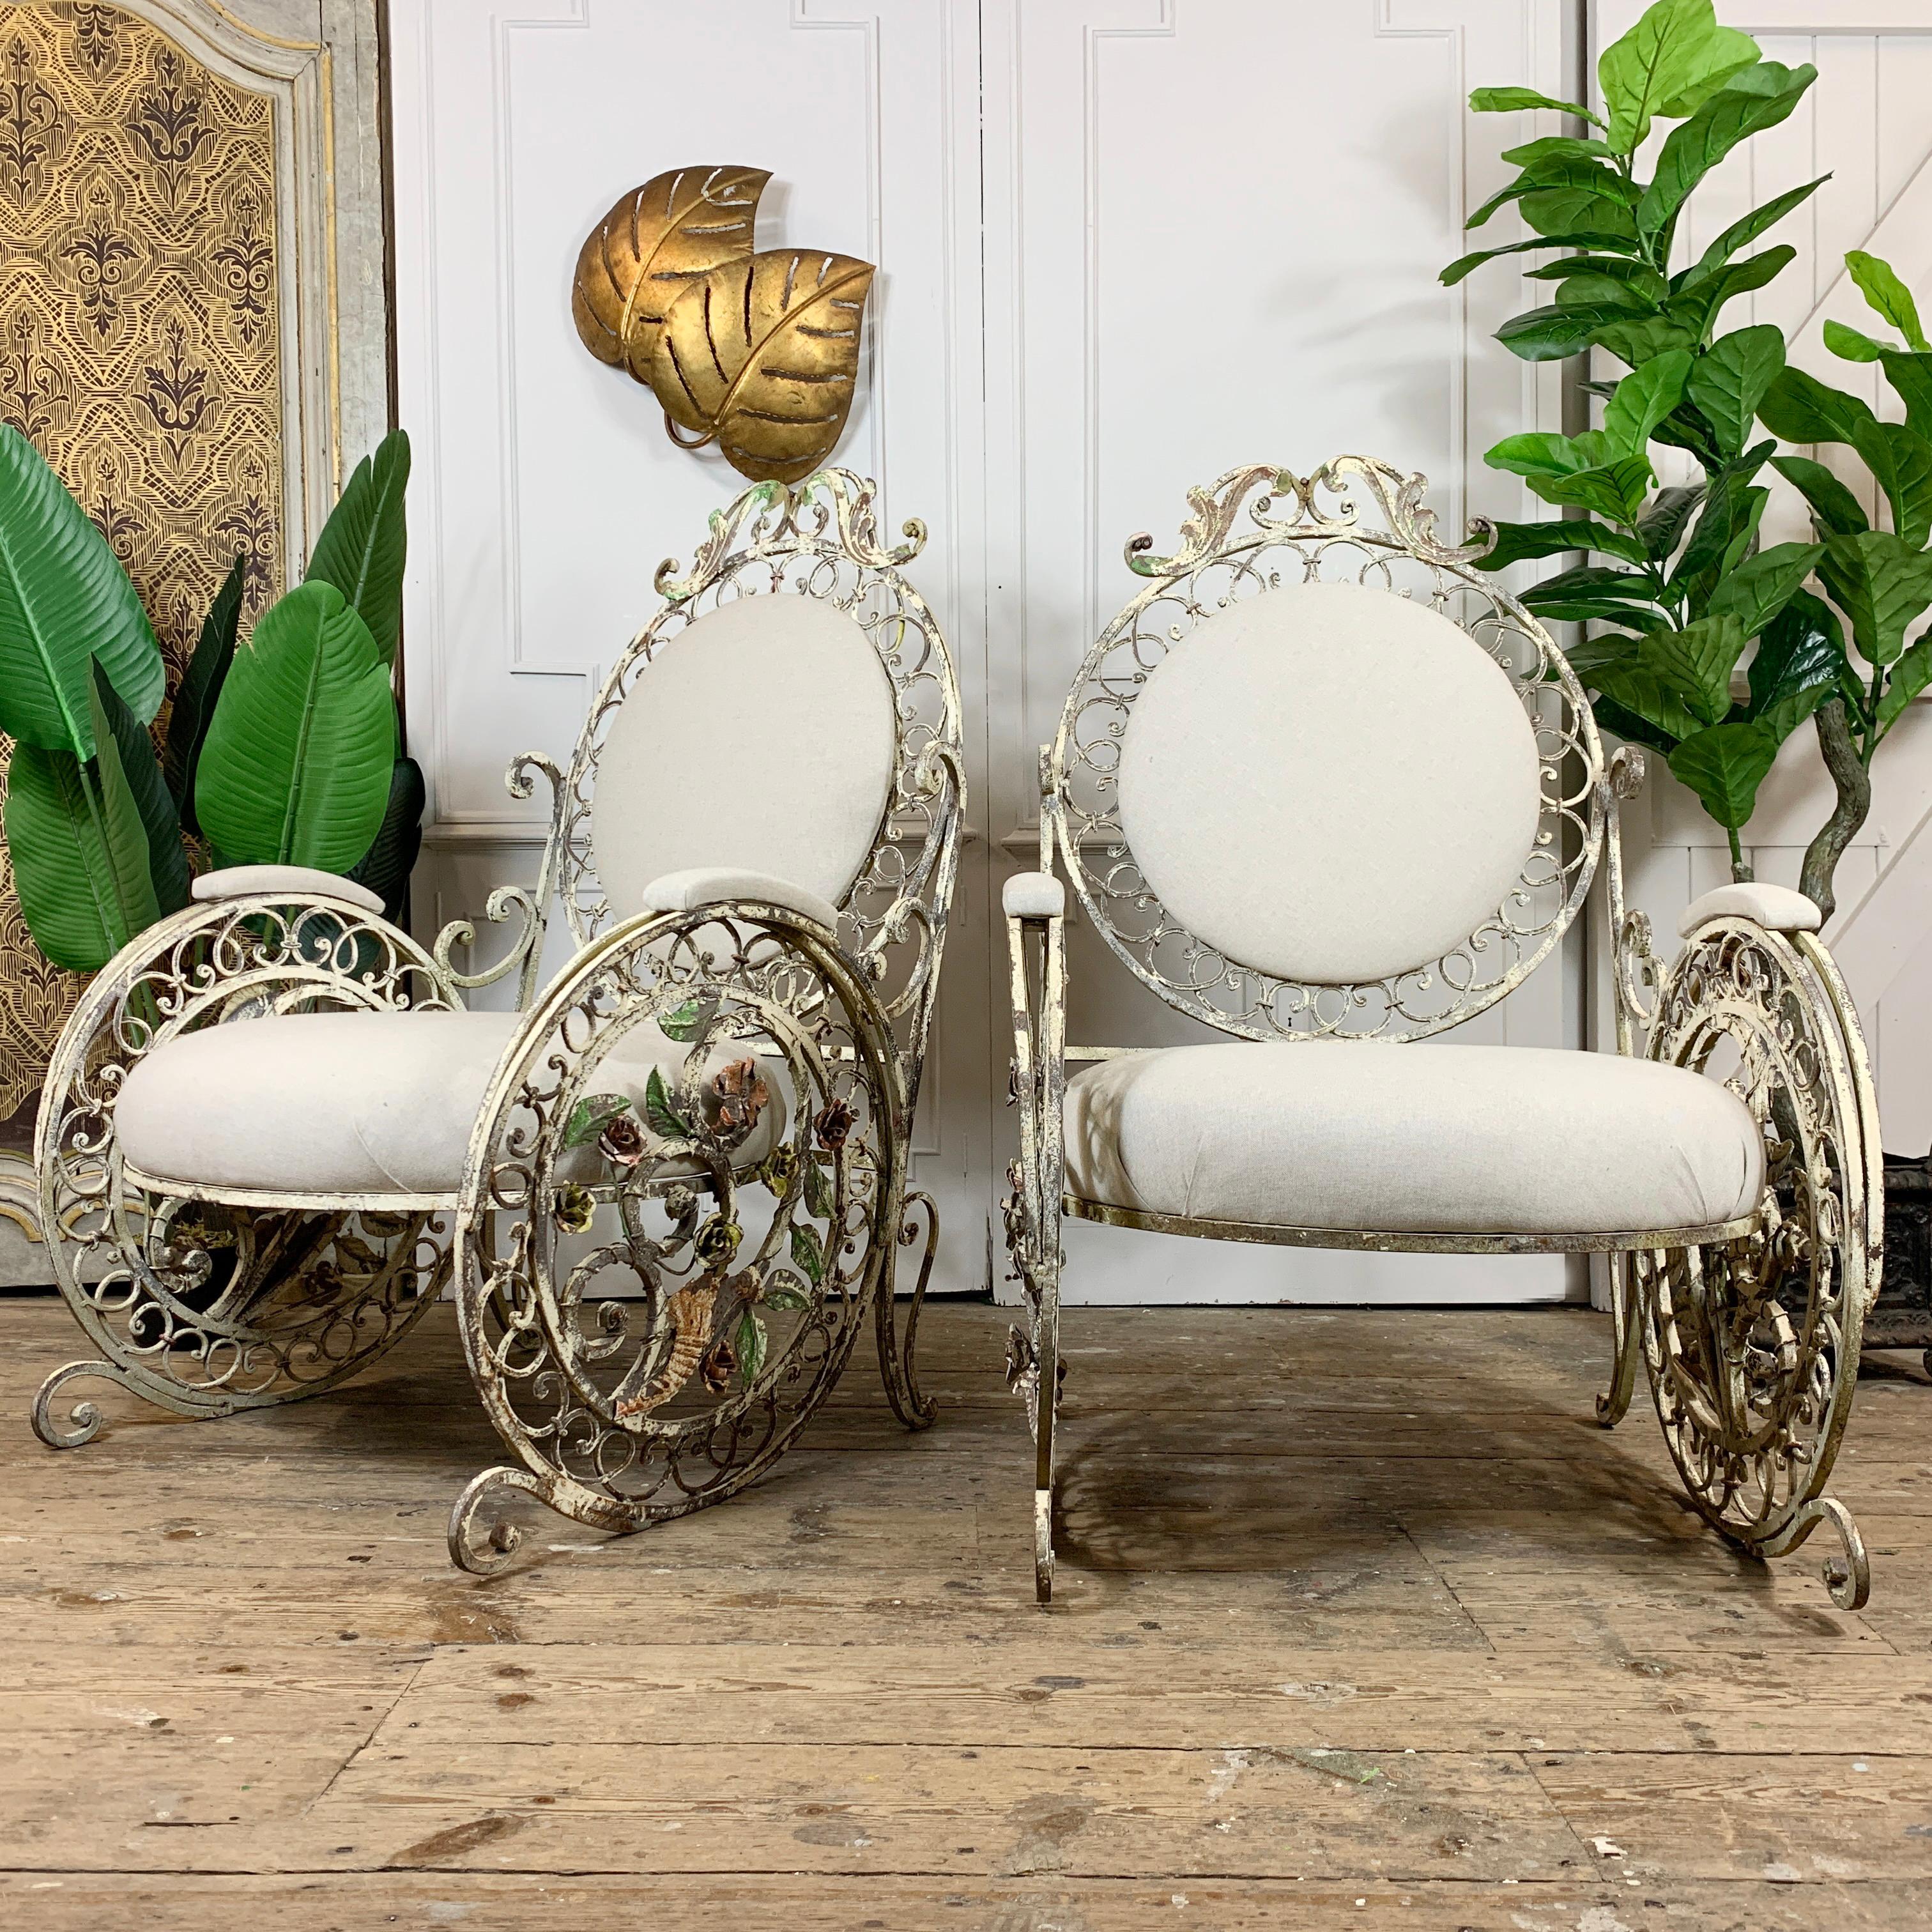 Exceptionnelle paire de chaises de patio/orangerie françaises de la fin du 19e siècle.

Il s'agit d'une magnifique paire de grandes chaises en fer forgé, avec des détails décoratifs et une exécution des plus complexes. Une abondance de fleurs et